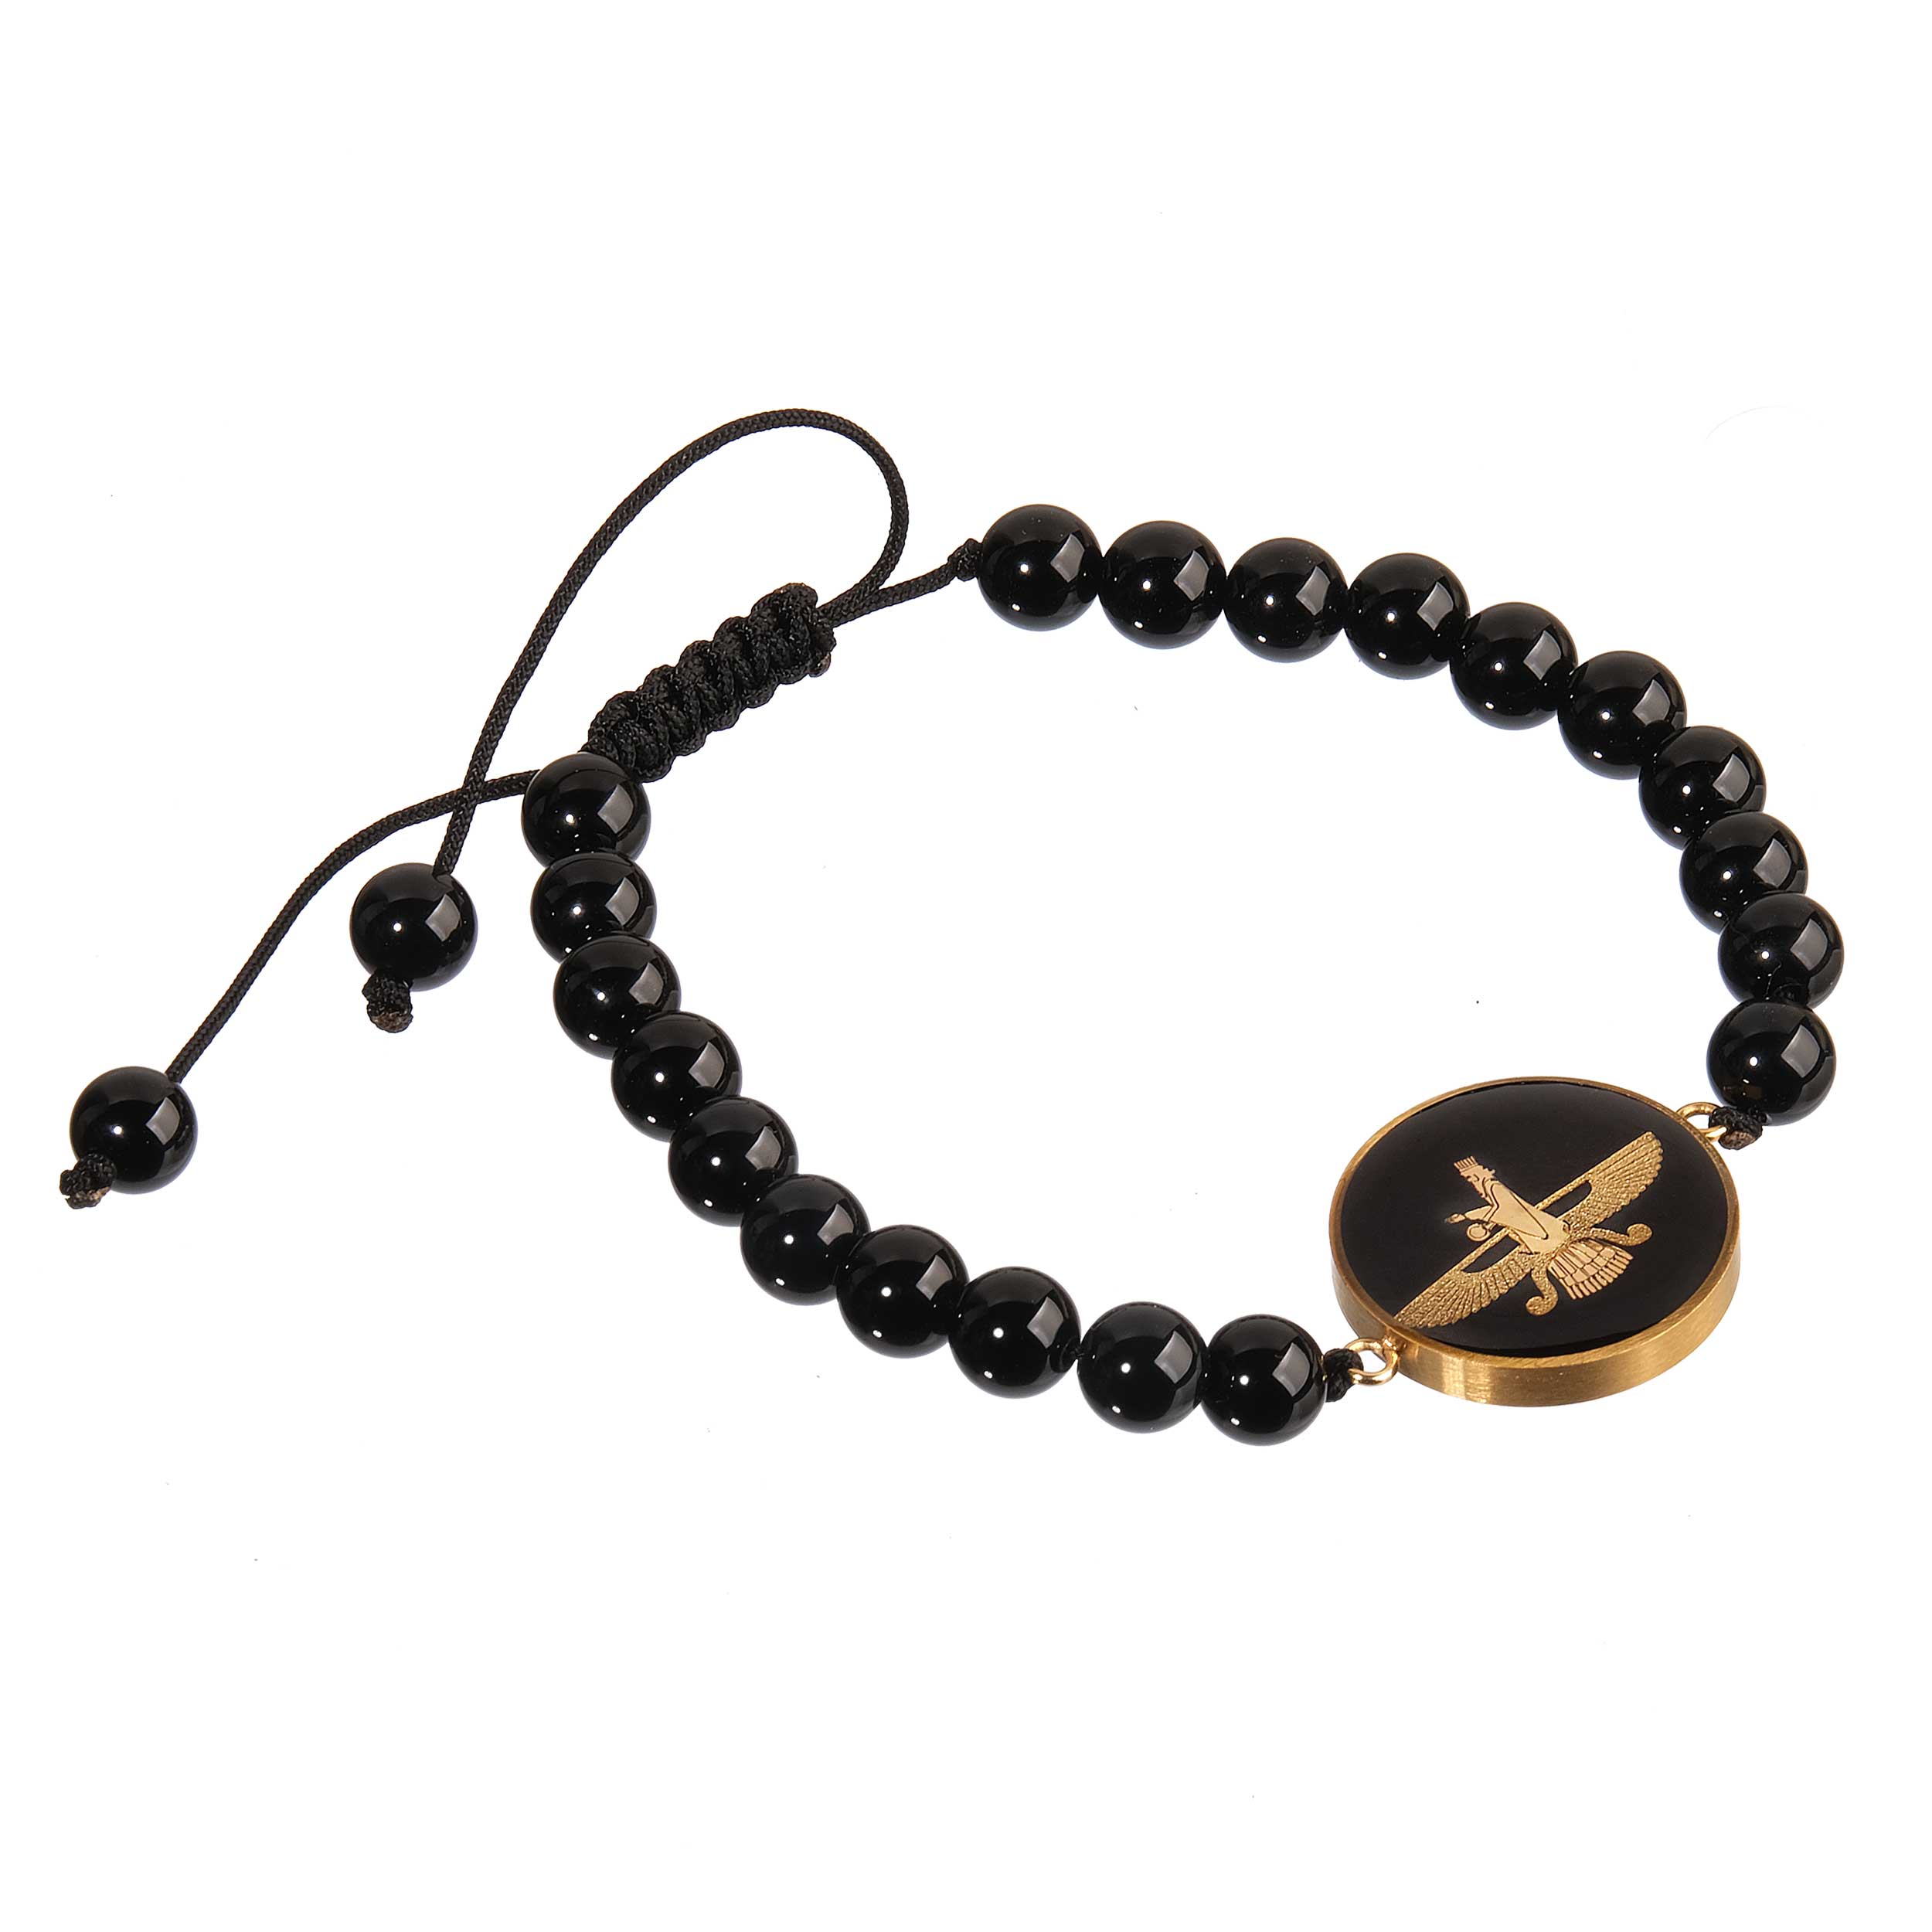 Onyx 24 carat gold leaf bracelet with Forouhar design